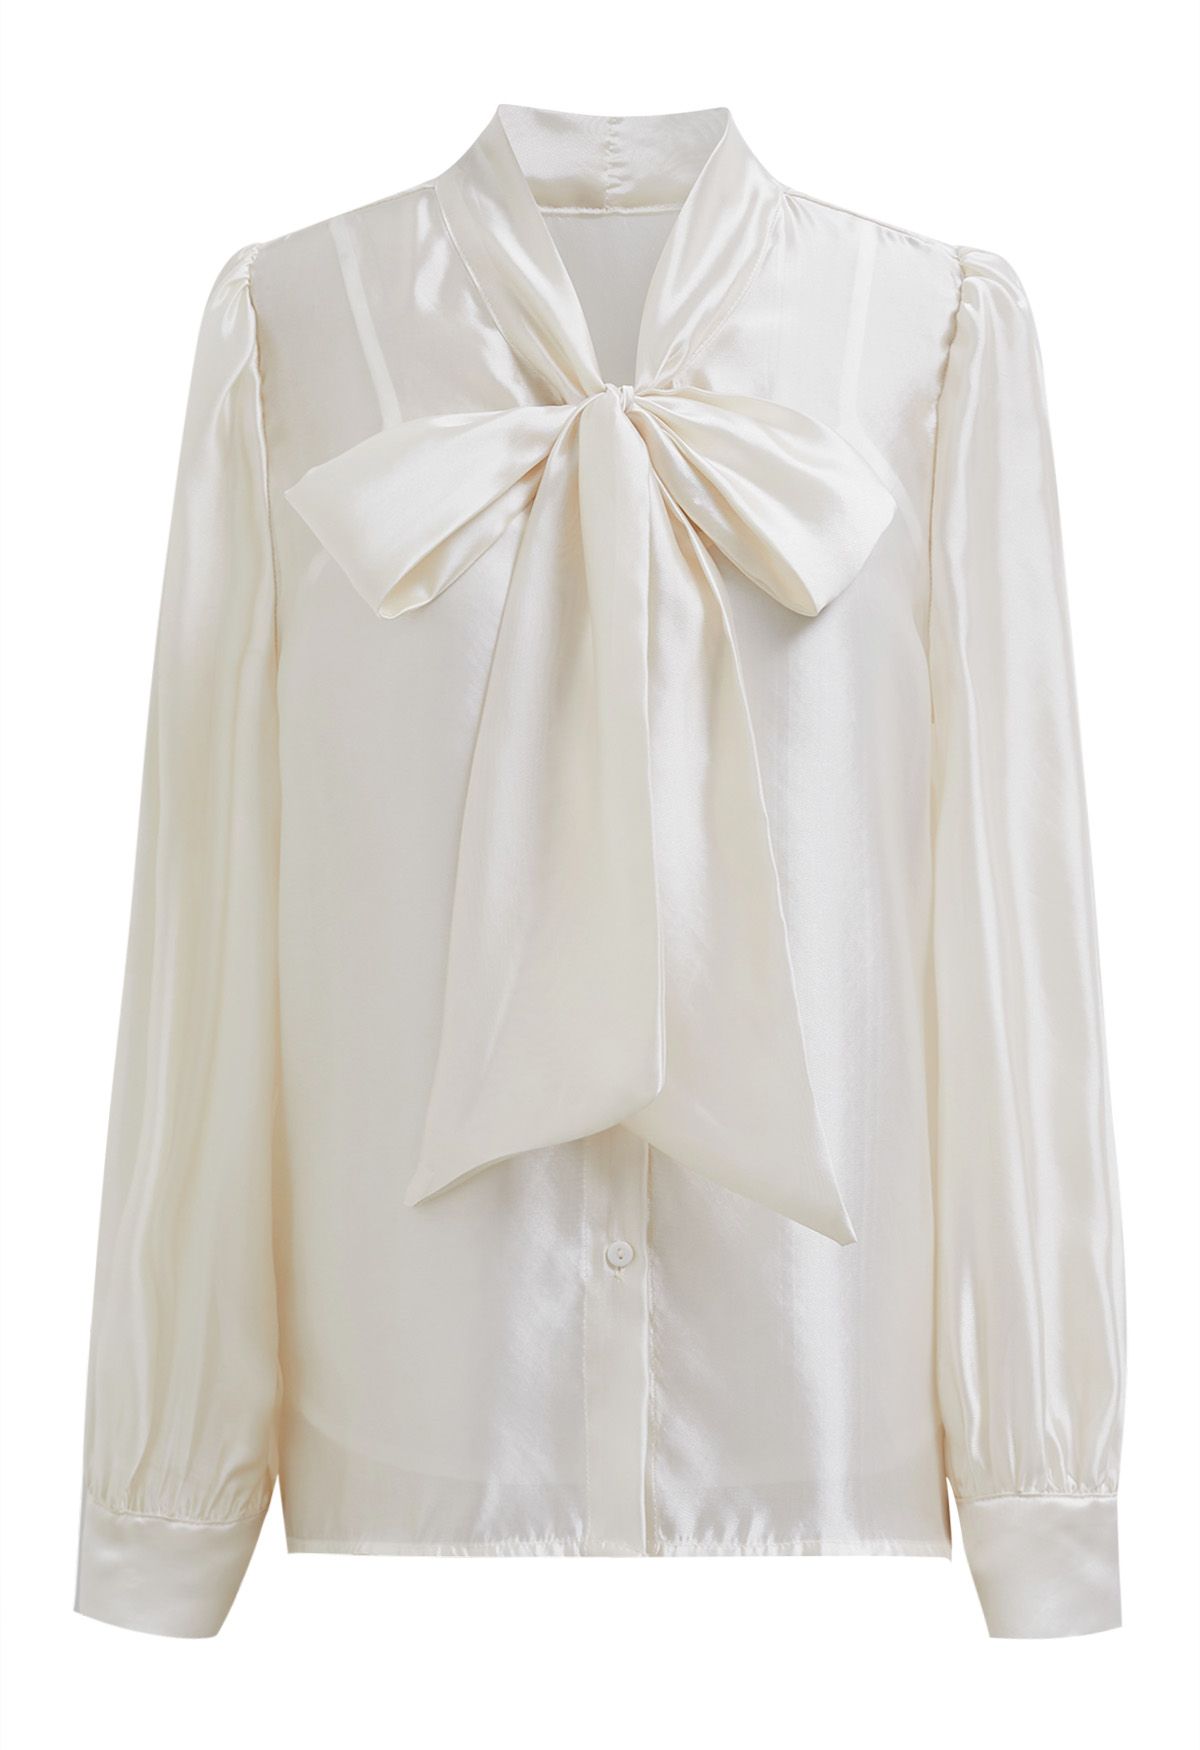 Camisa transparente elegante con mangas abullonadas y lazo en color crema